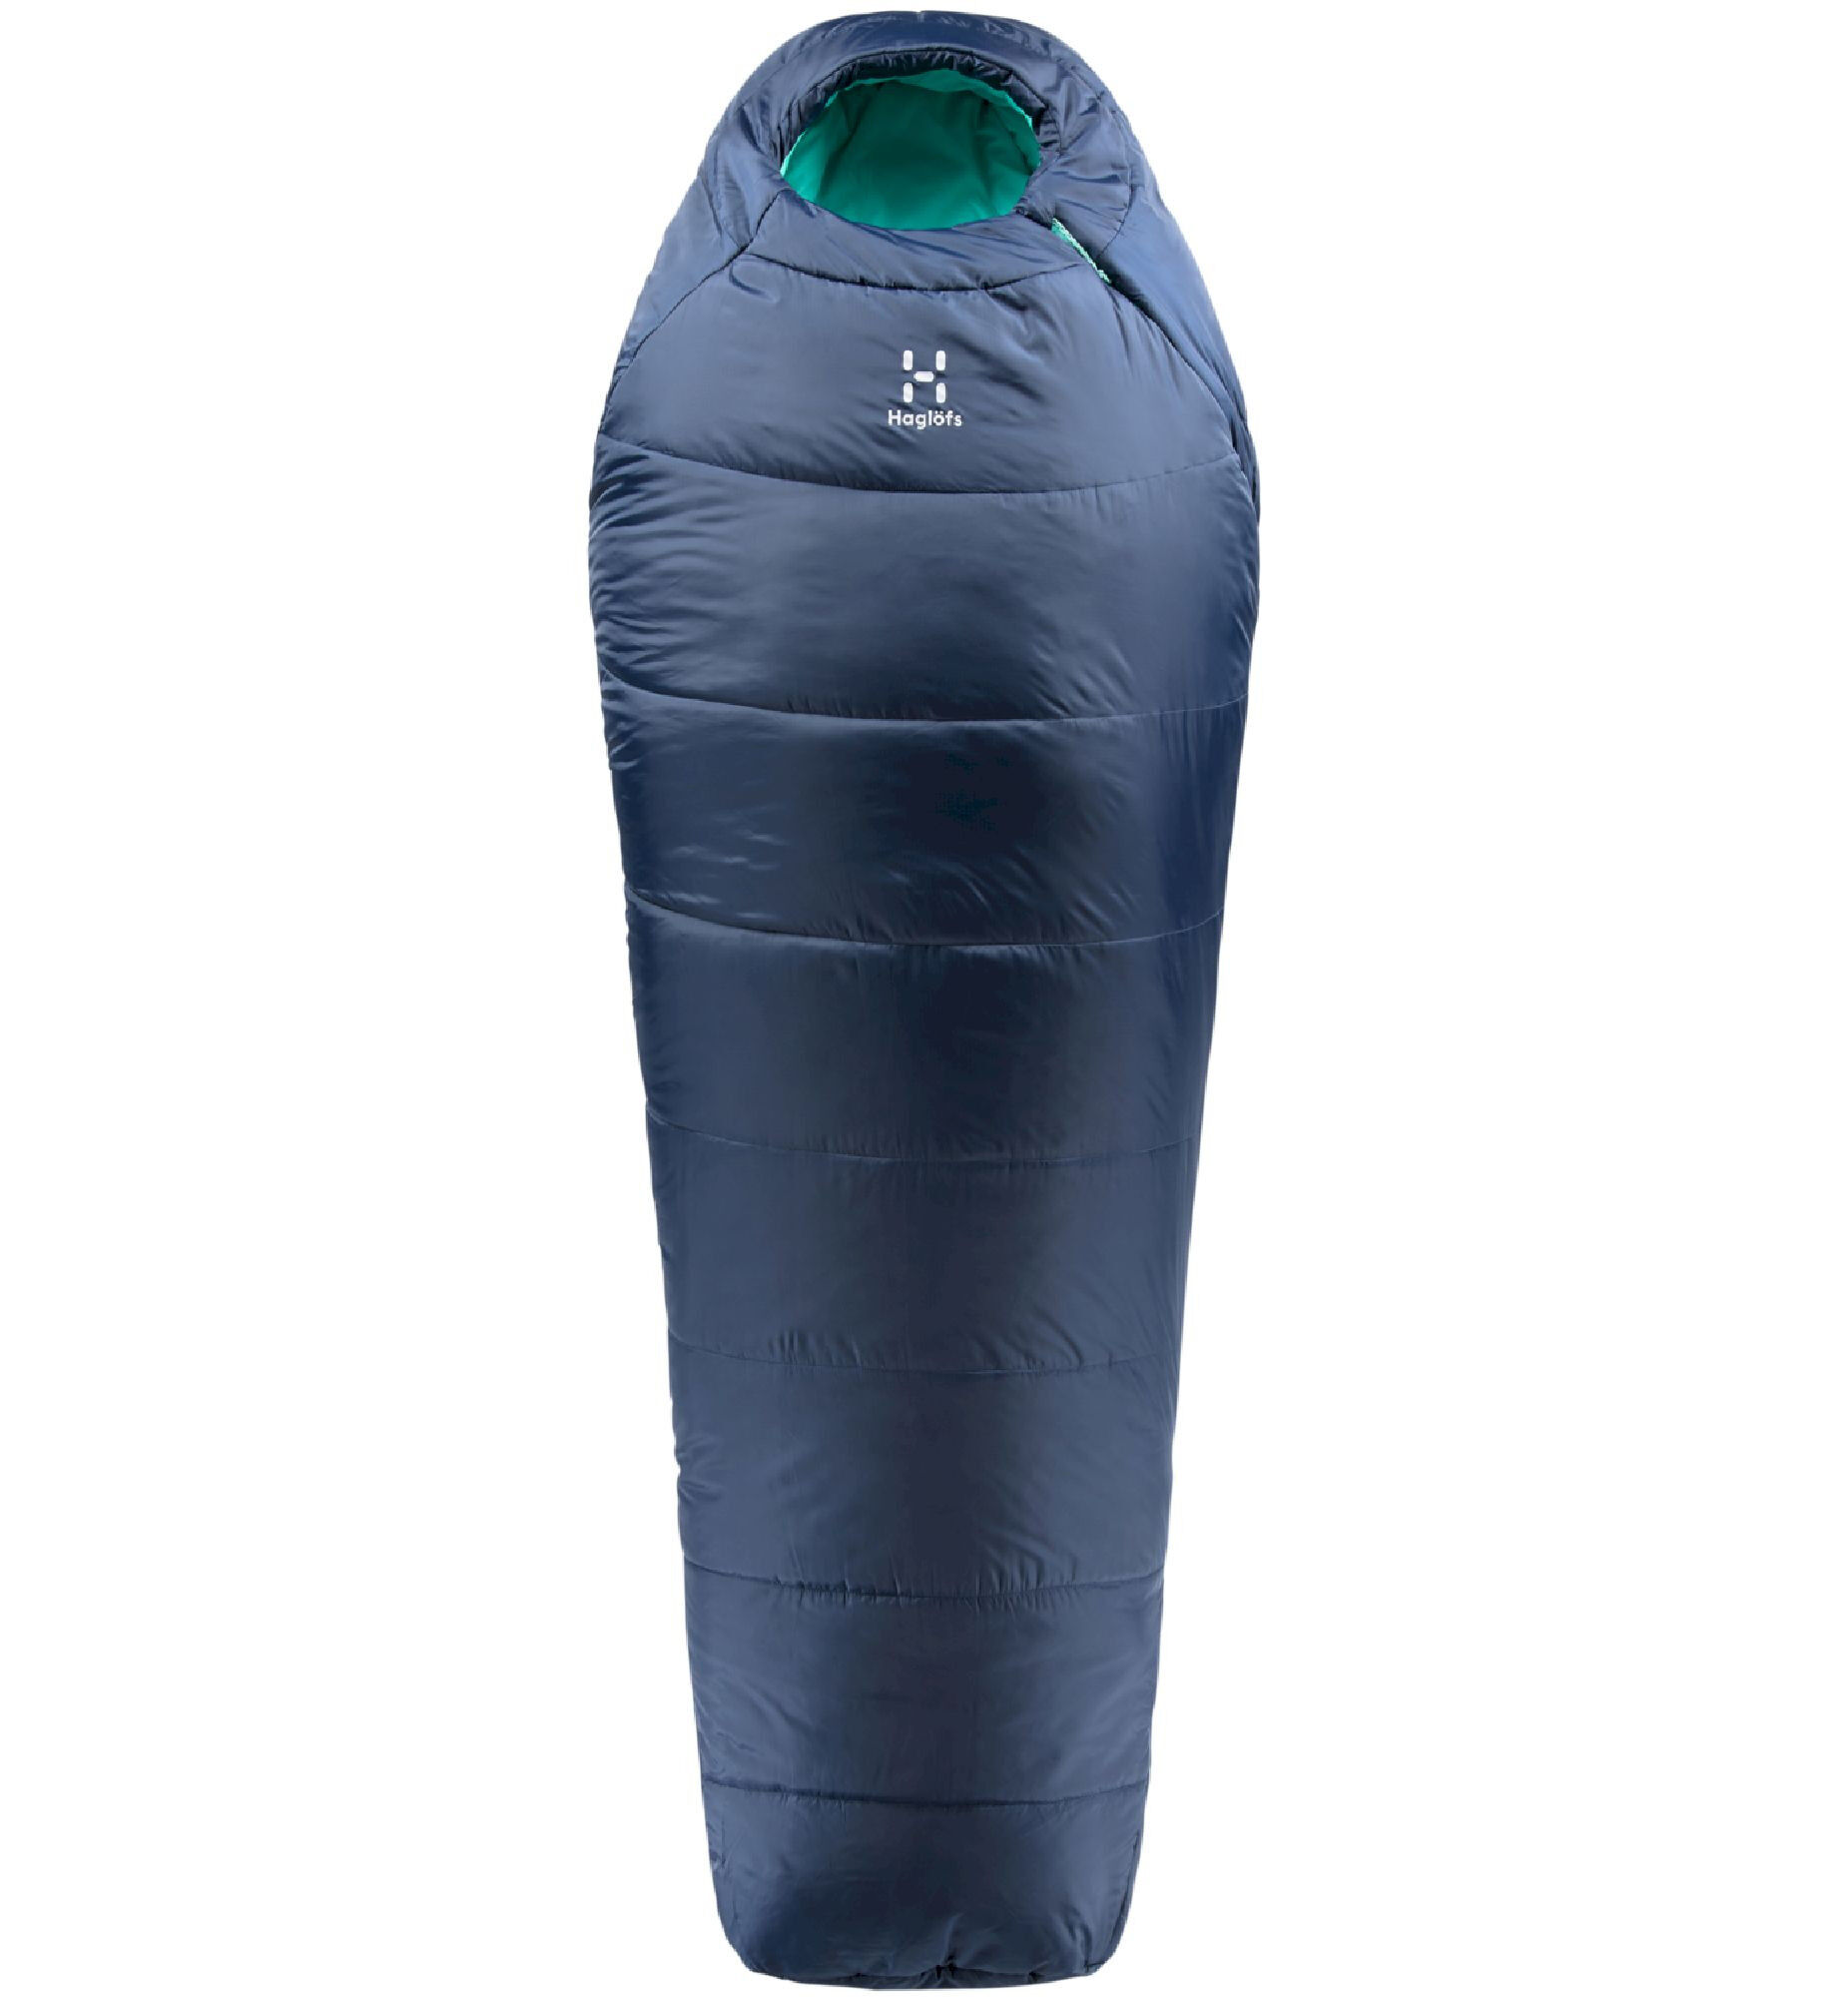 Haglöfs Musca -26 - Sleeping bag | Hardloop